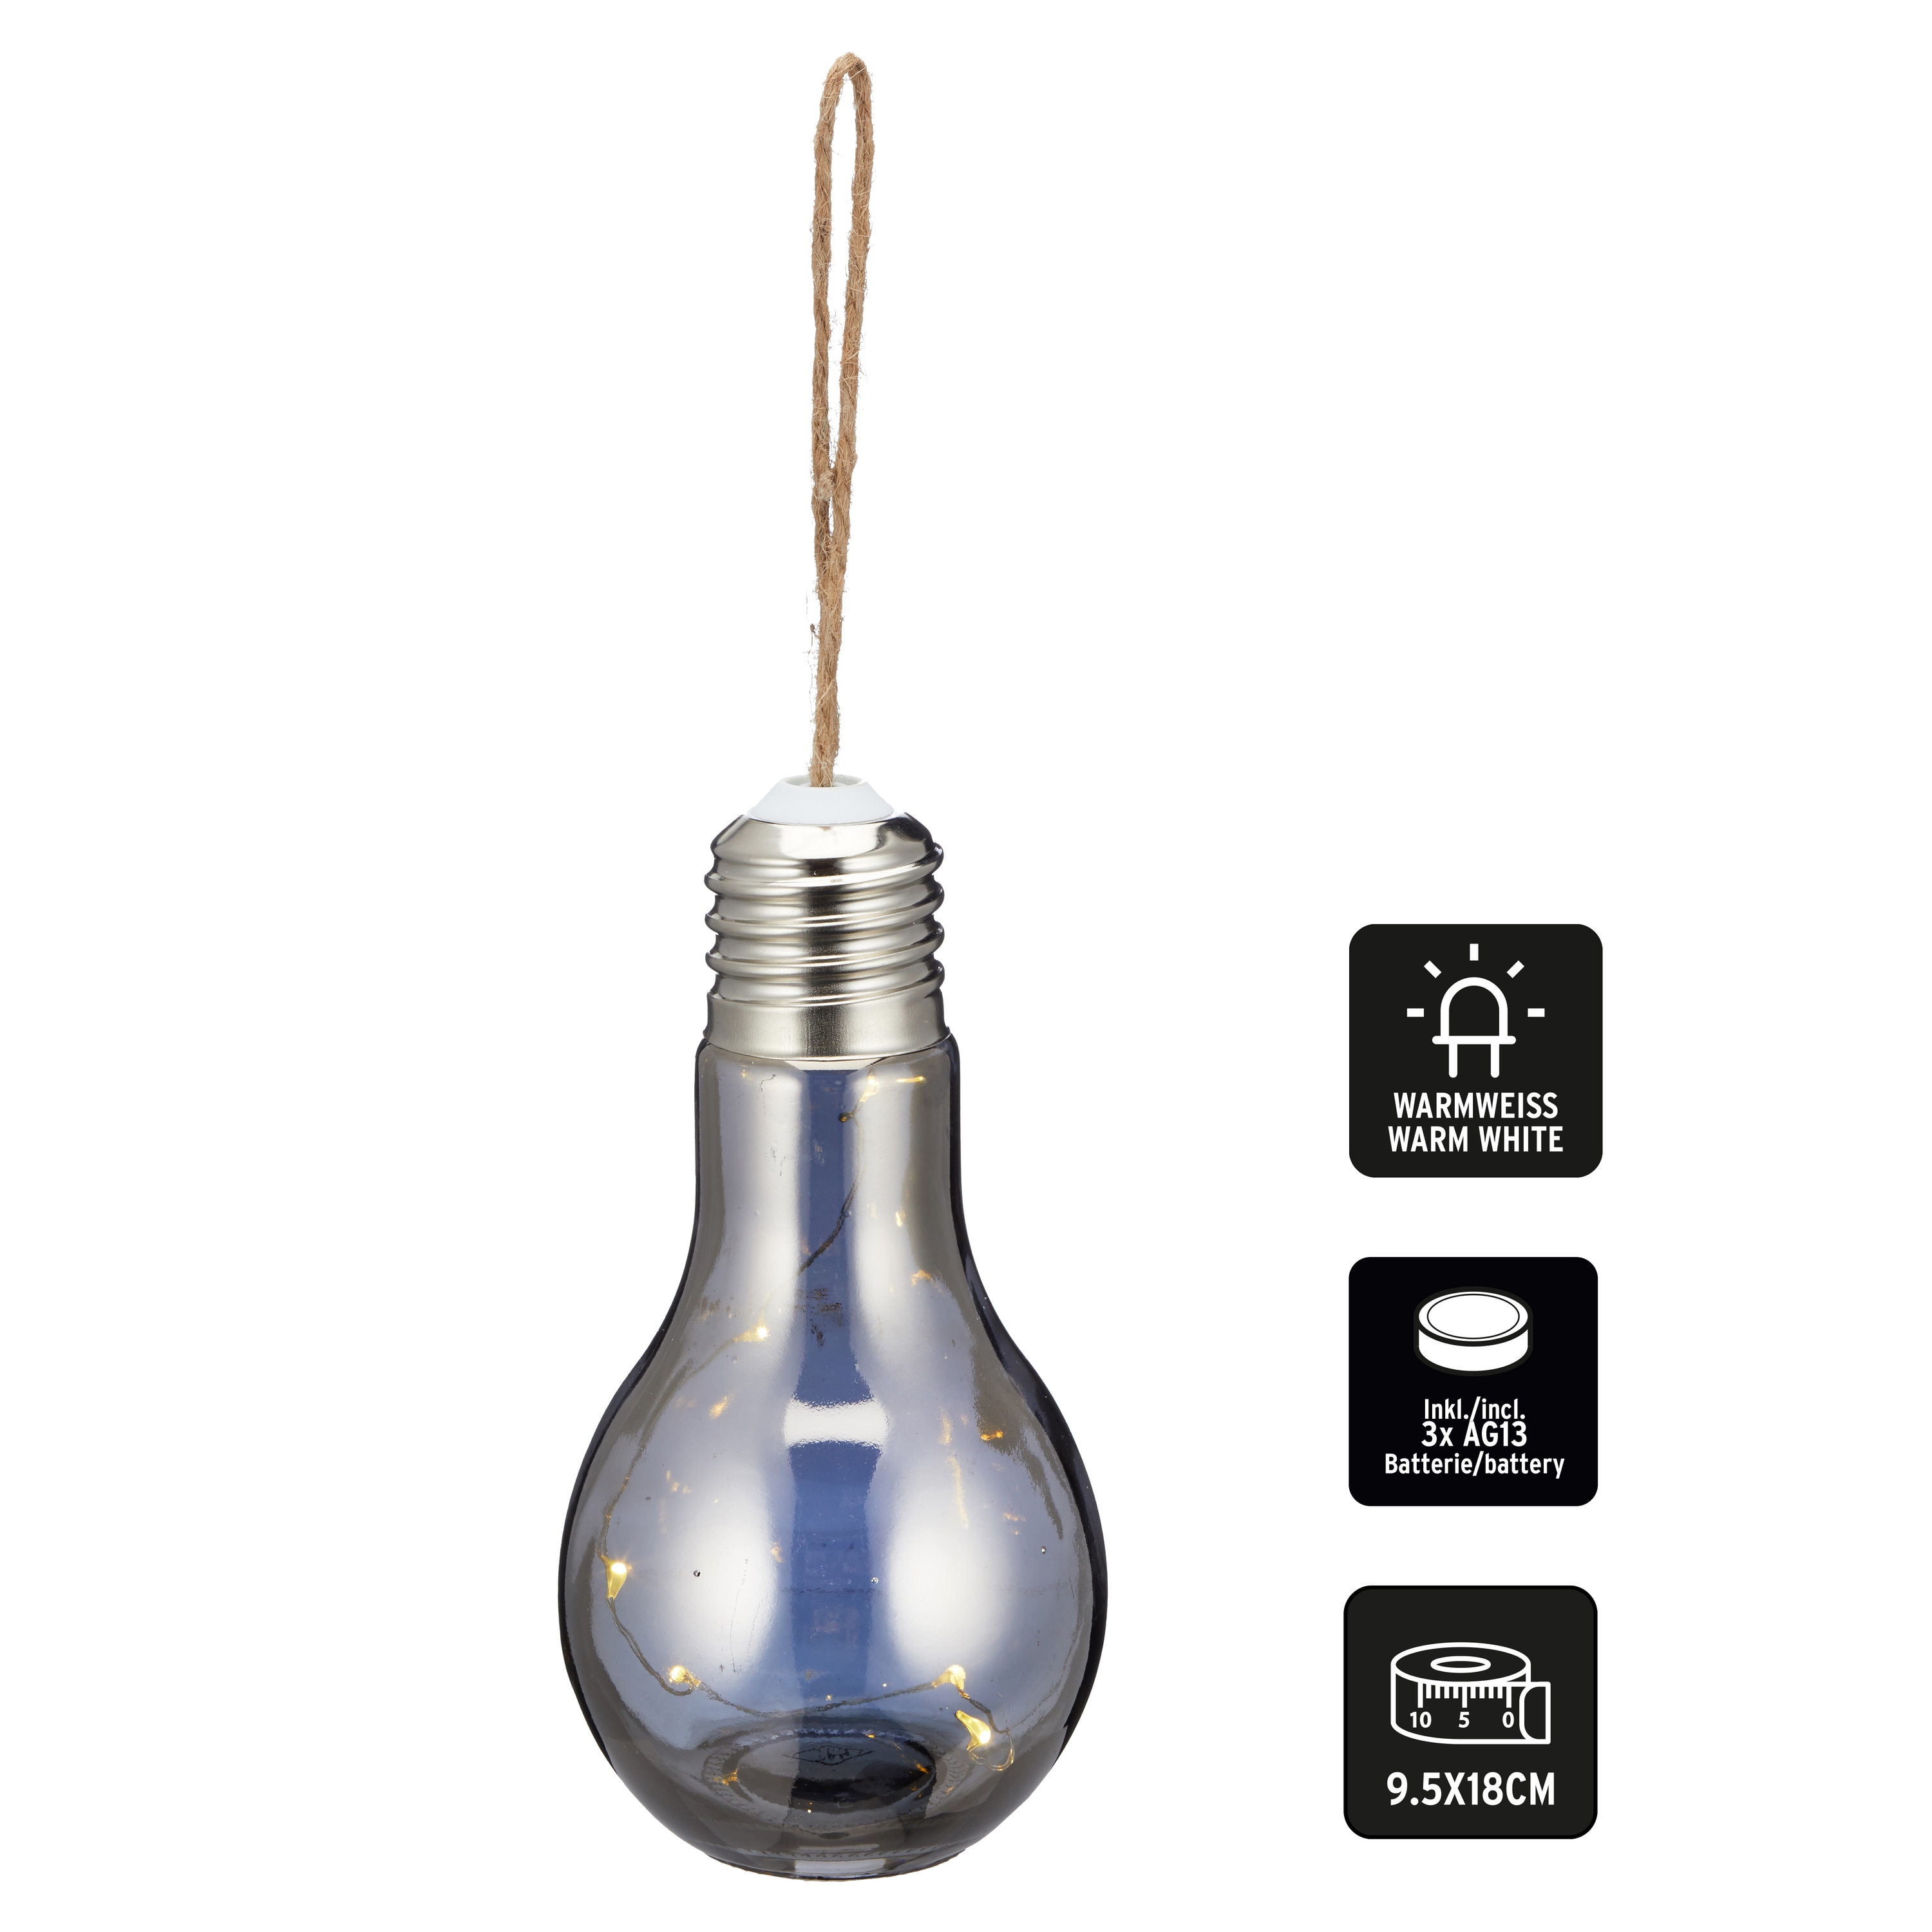 LED-Birne mit Hanfkordel, 5 LEDs, 18 cm, grau, warmweiß, batteriebetrieben